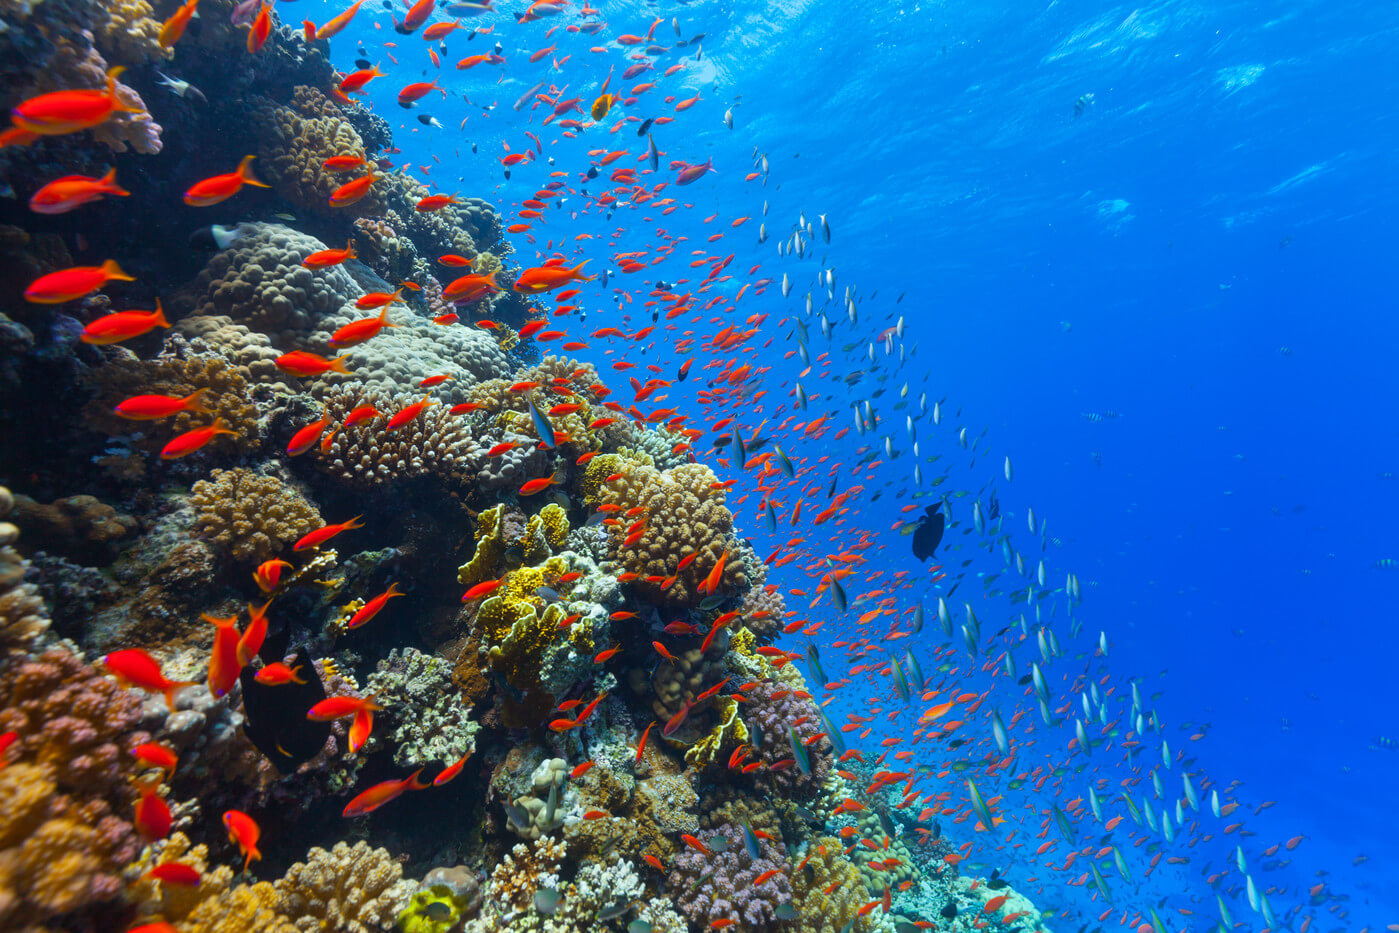 L'acidità dell'acqua negli oceani aumenta gradualmente. Come influisce sugli animali?